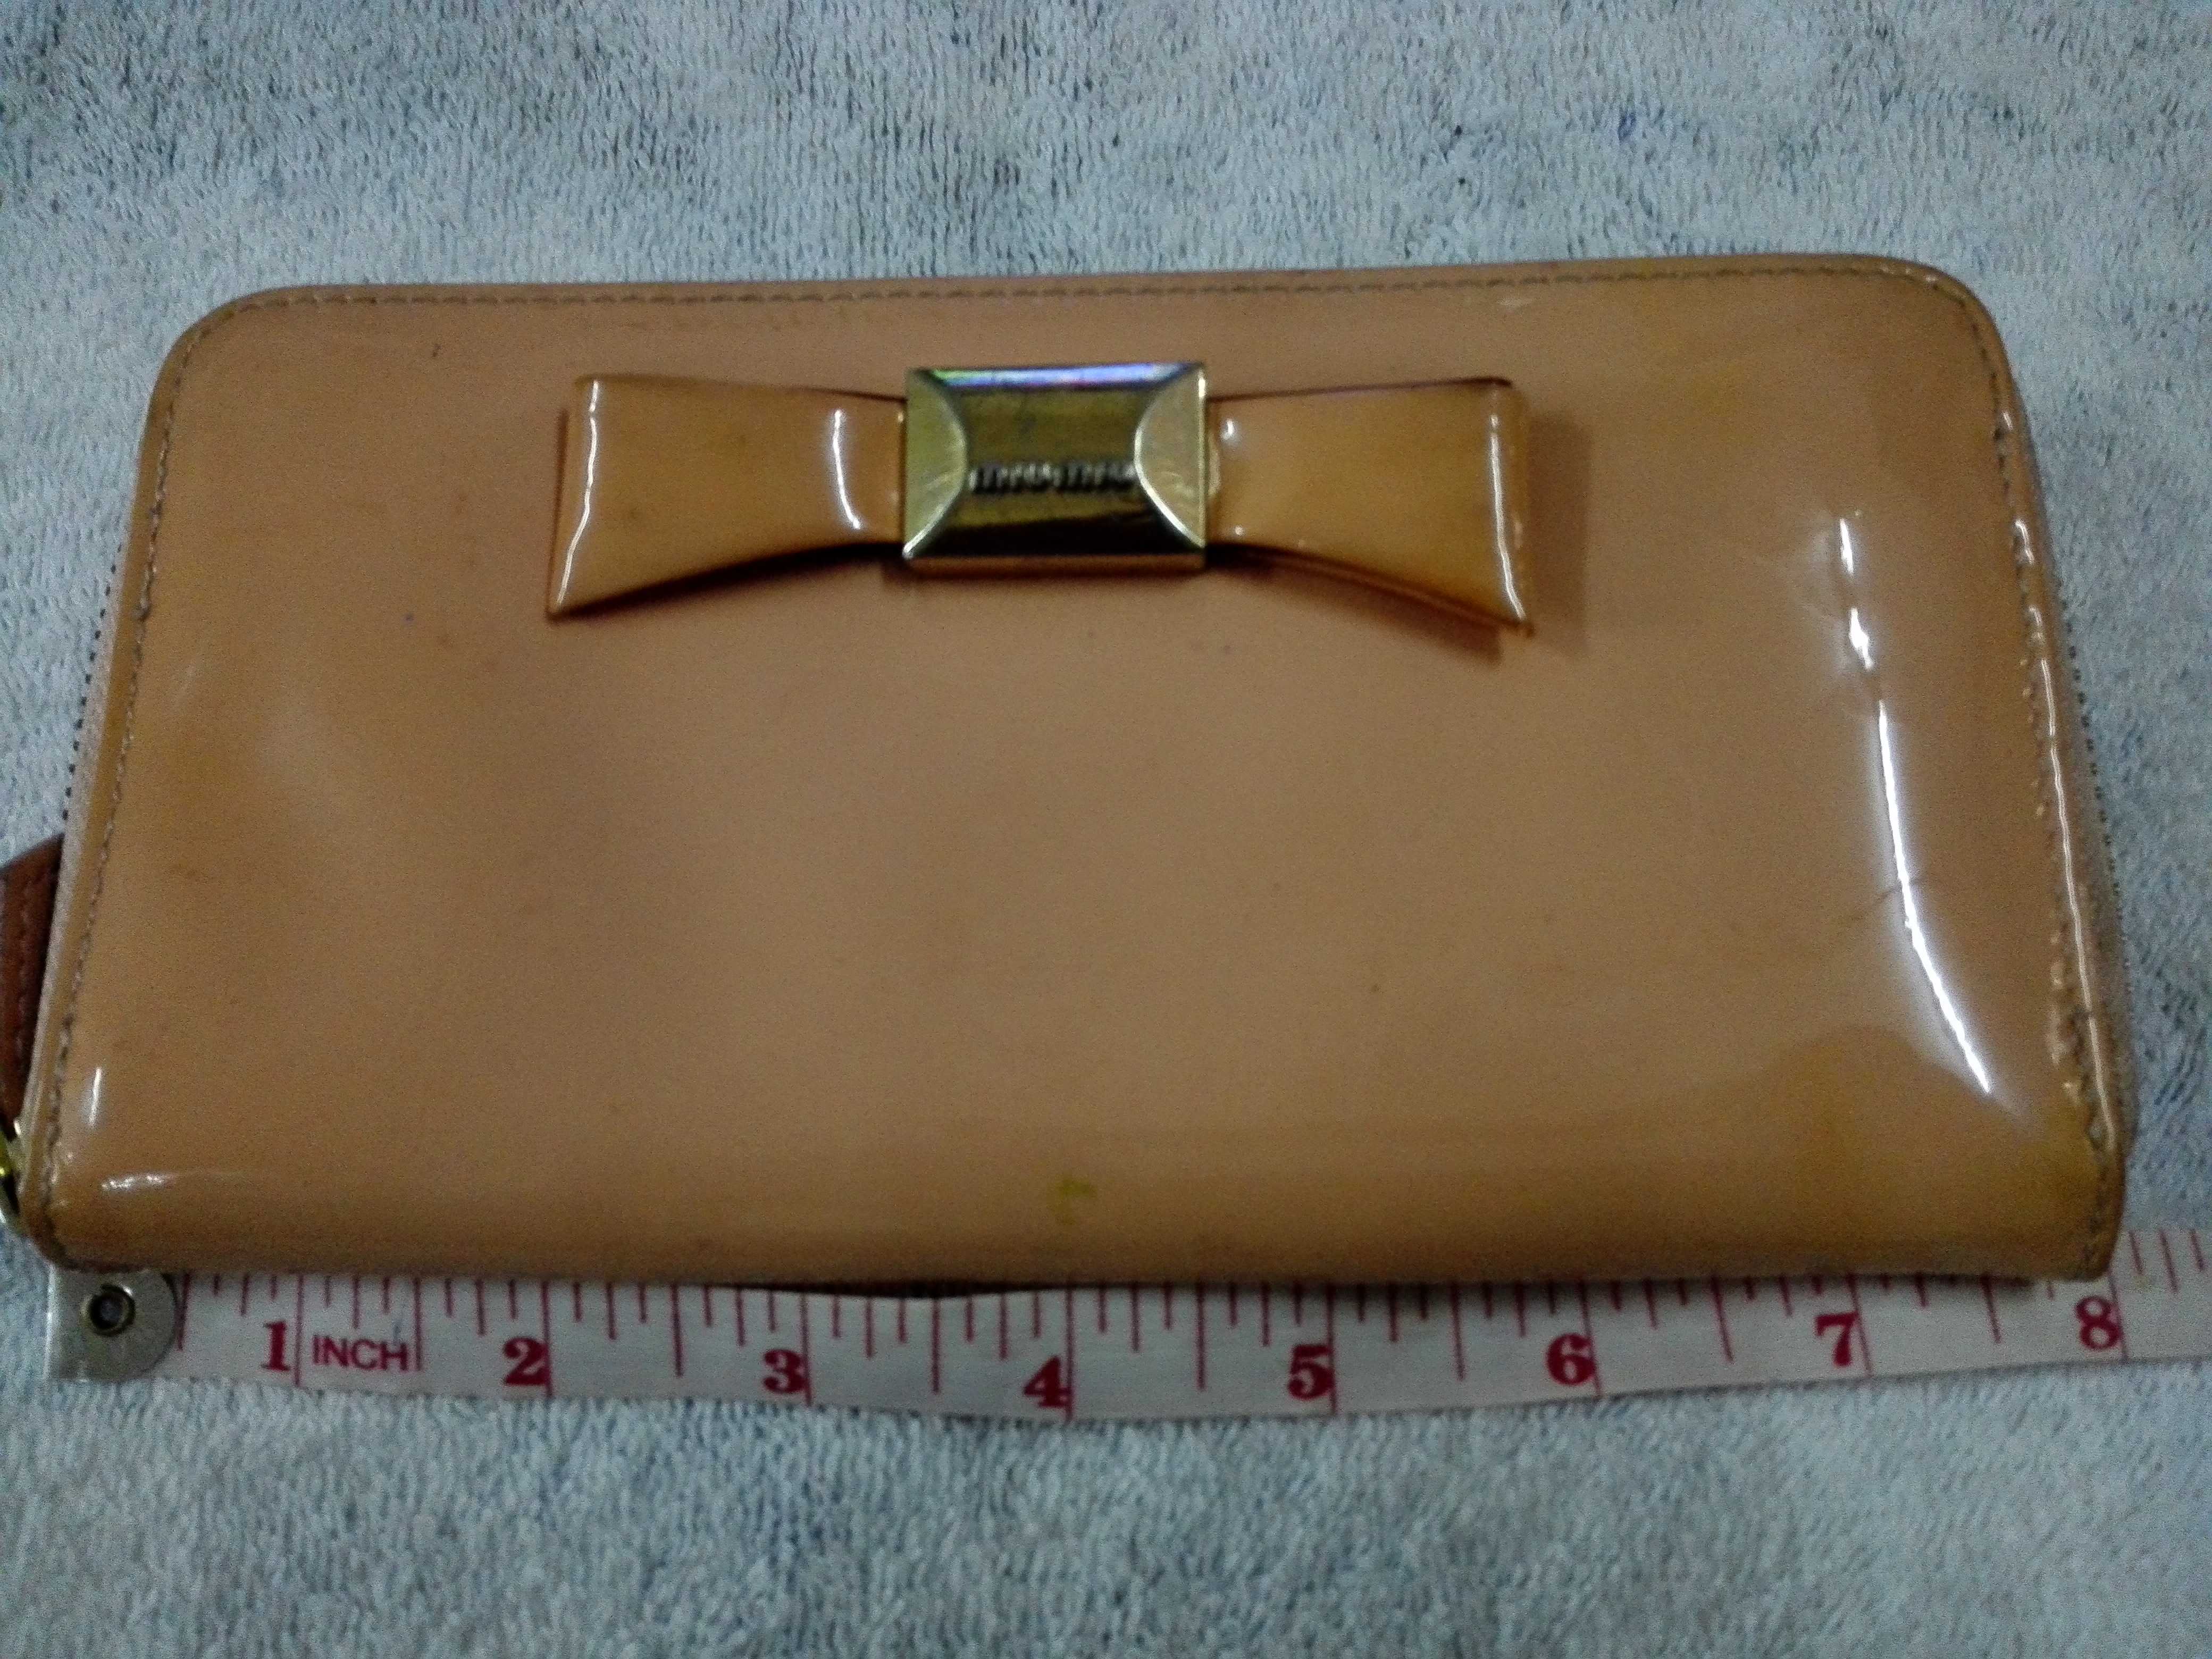 MIU MIU Made In ITALY 8 X 4 inch purse wallet - 3